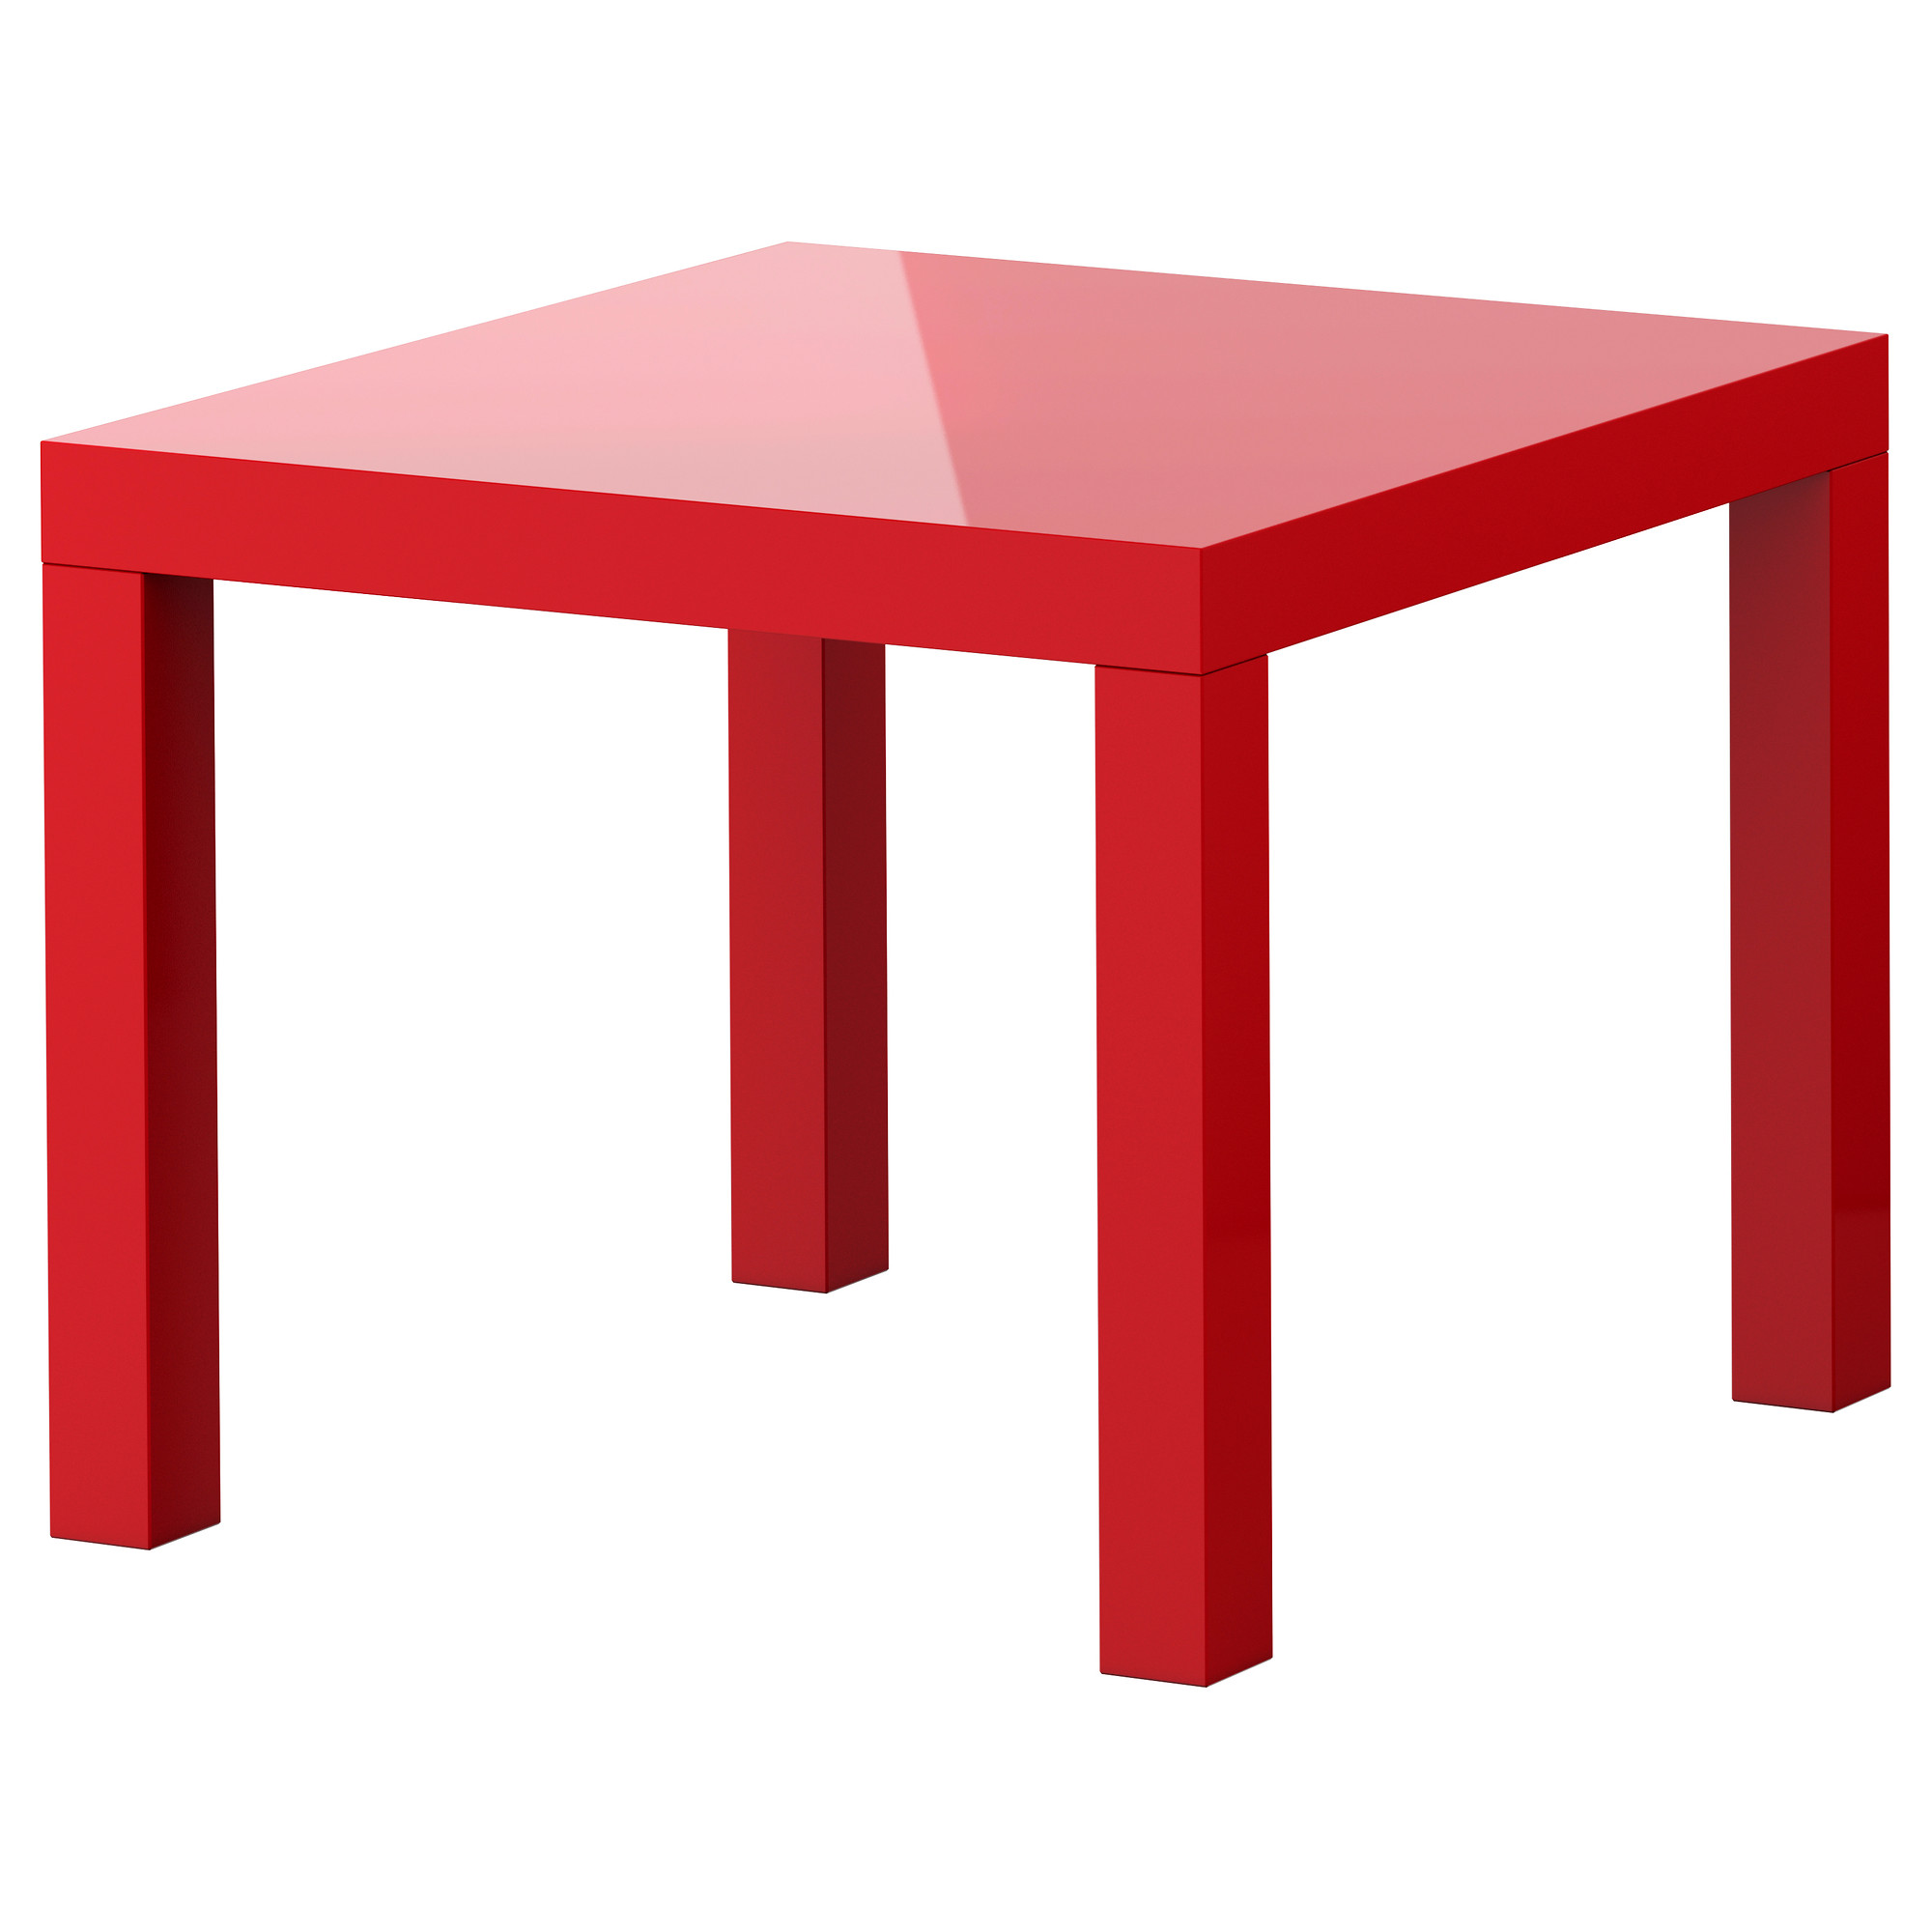 Картинка стол. Стол икеа ЛАКК красный. Икеа красныйстолик лаку. Икеа красный столик ЛАКК. ЛАКК придиванный столик.